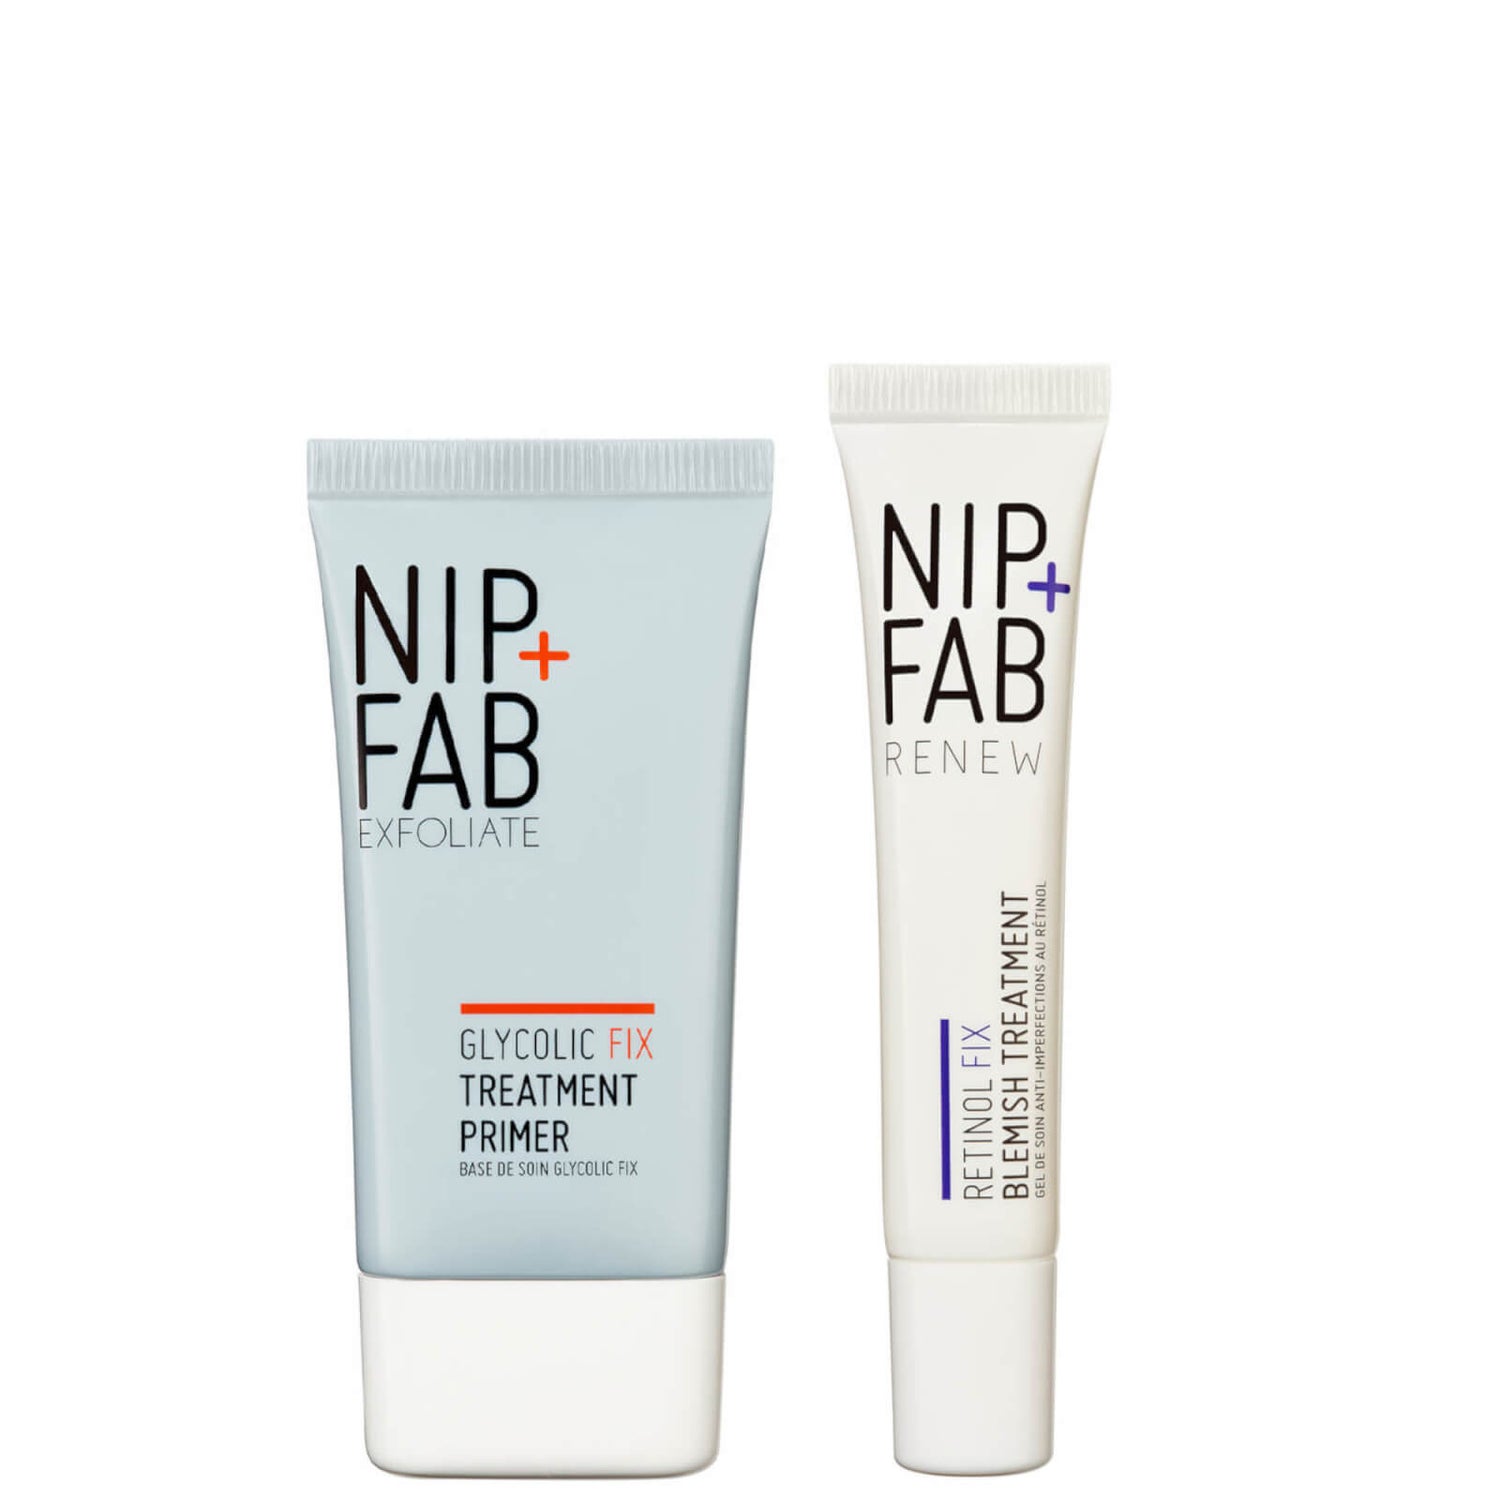 NIP+FAB Day and Night Skin Perfecting Duo (Worth £40.00)